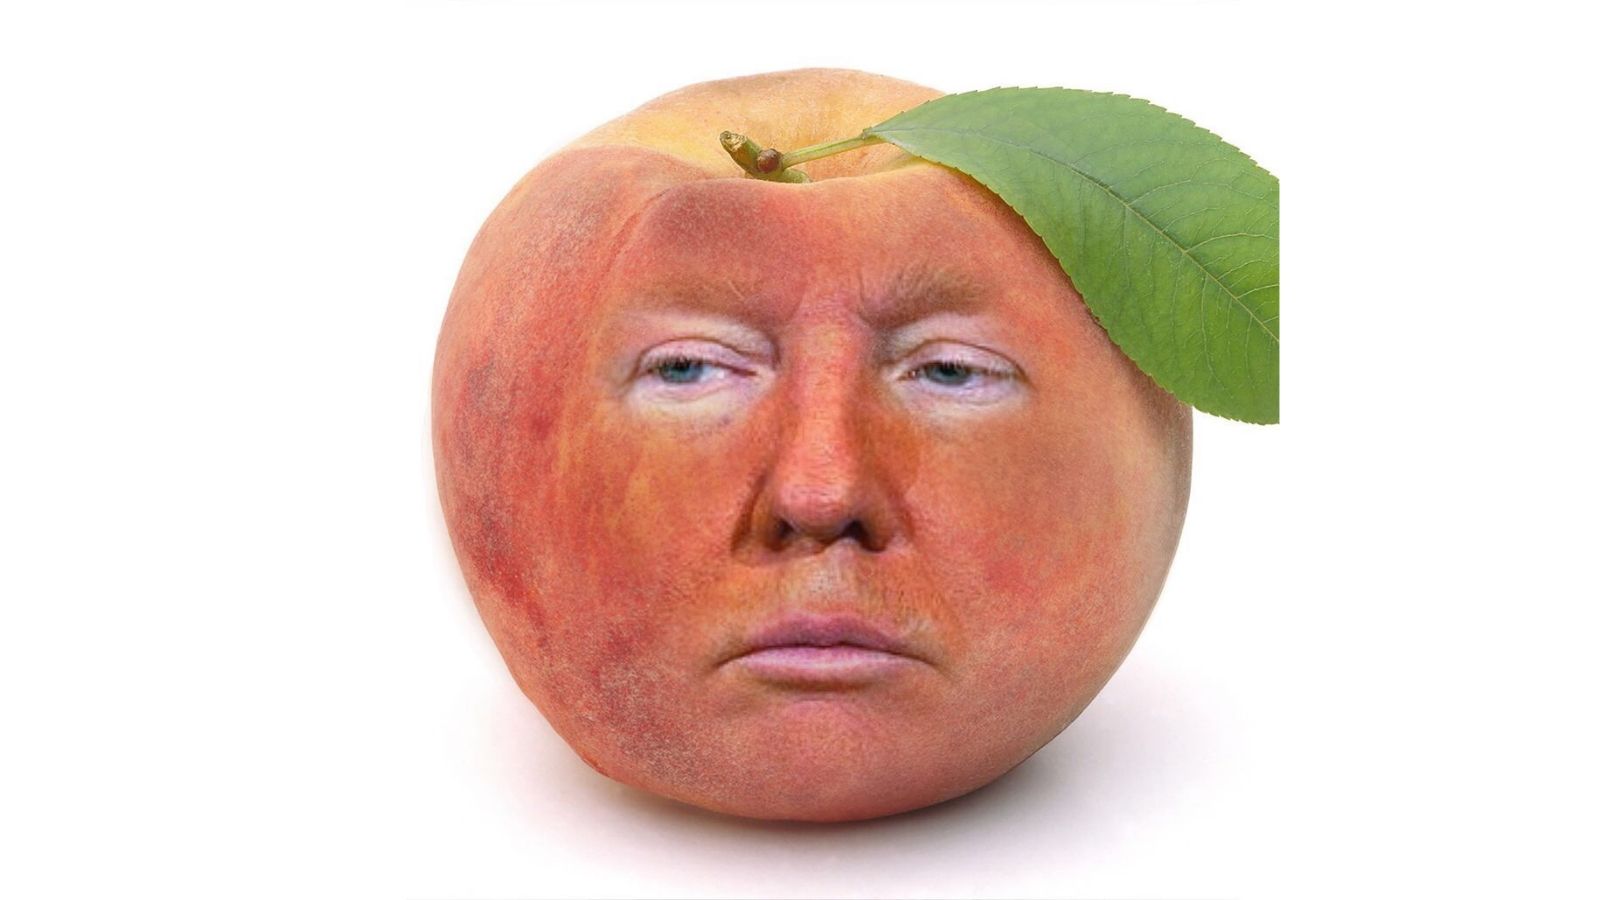 Trump in Peach